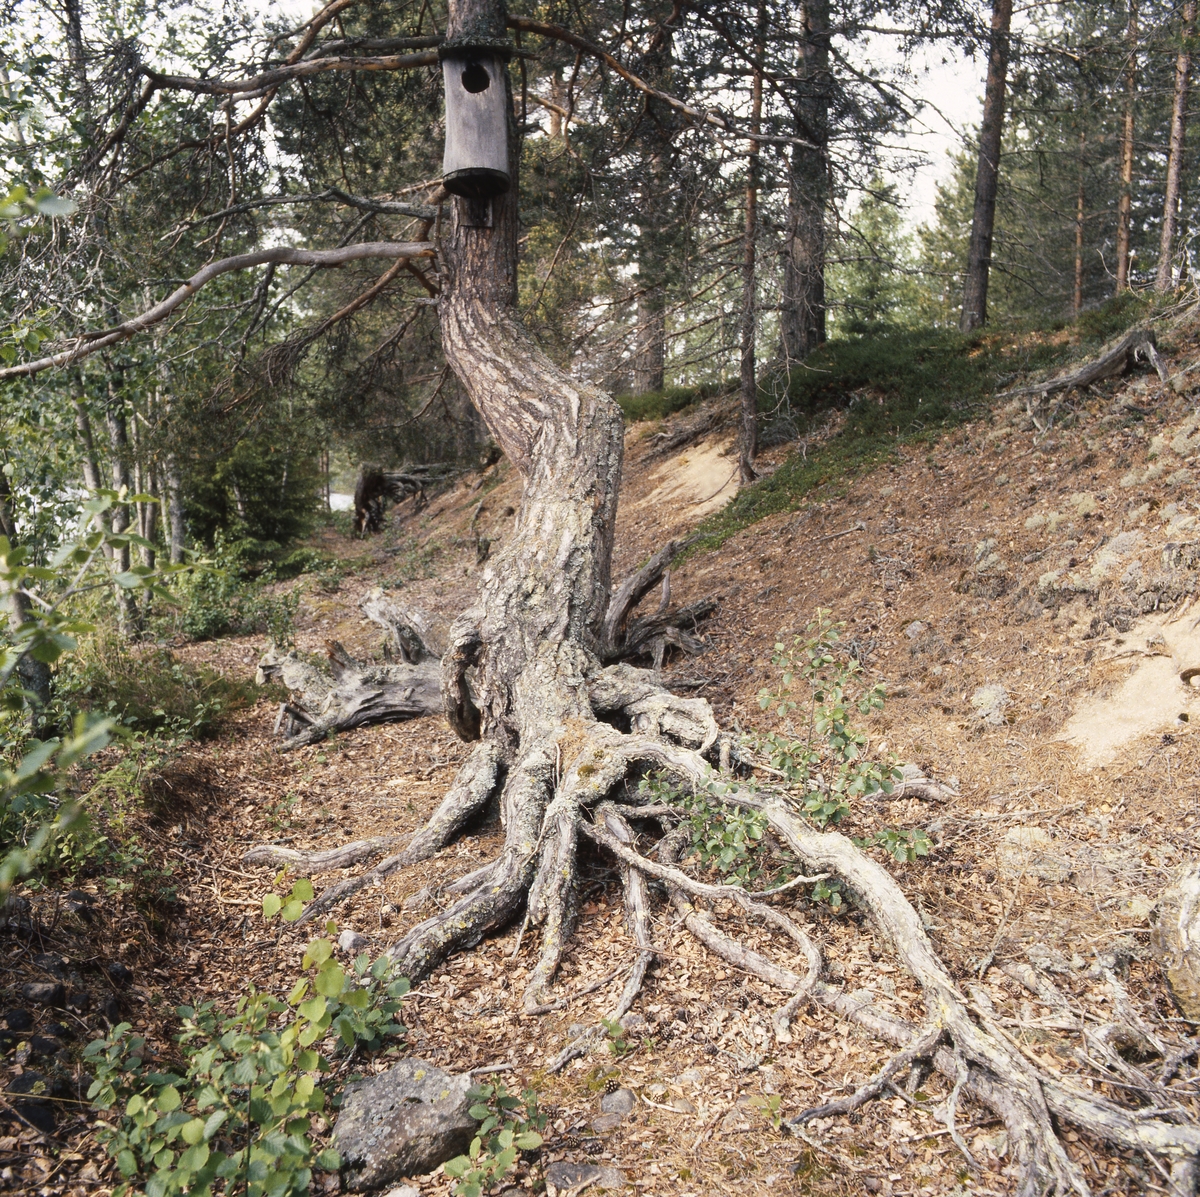 Länsyrkesrådet och Skogsbruksskolan var vid Ängratörn 5 juni 1990. På en krokig trädstam med kraftiga rötter sitter en knipholk.